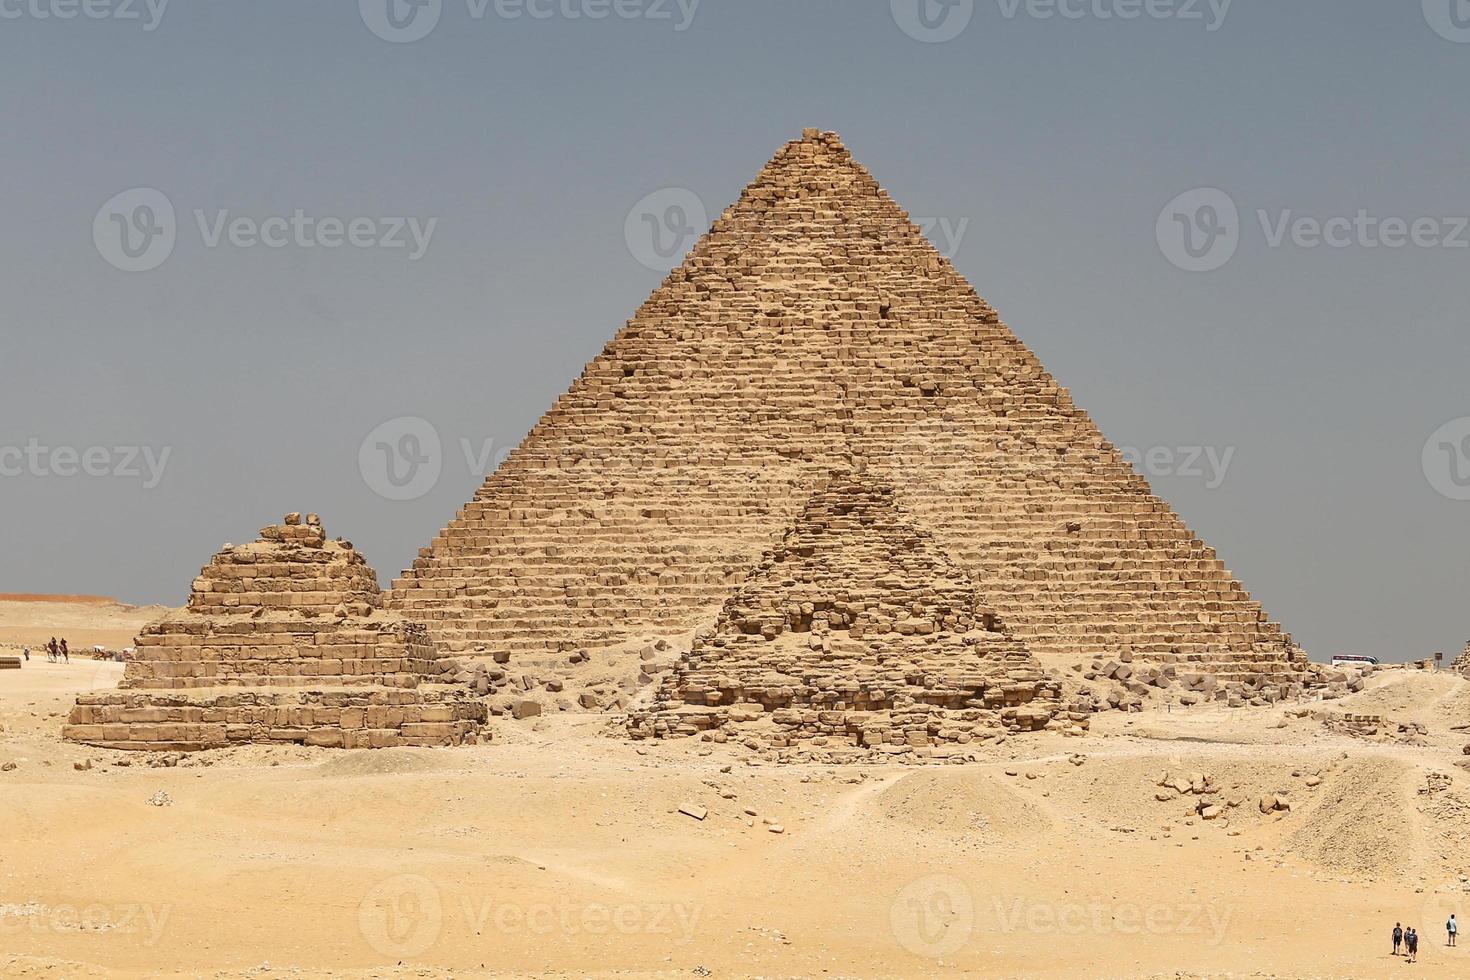 Menkaure-Pyramide im Pyramidenkomplex von Gizeh, Kairo, Ägypten foto